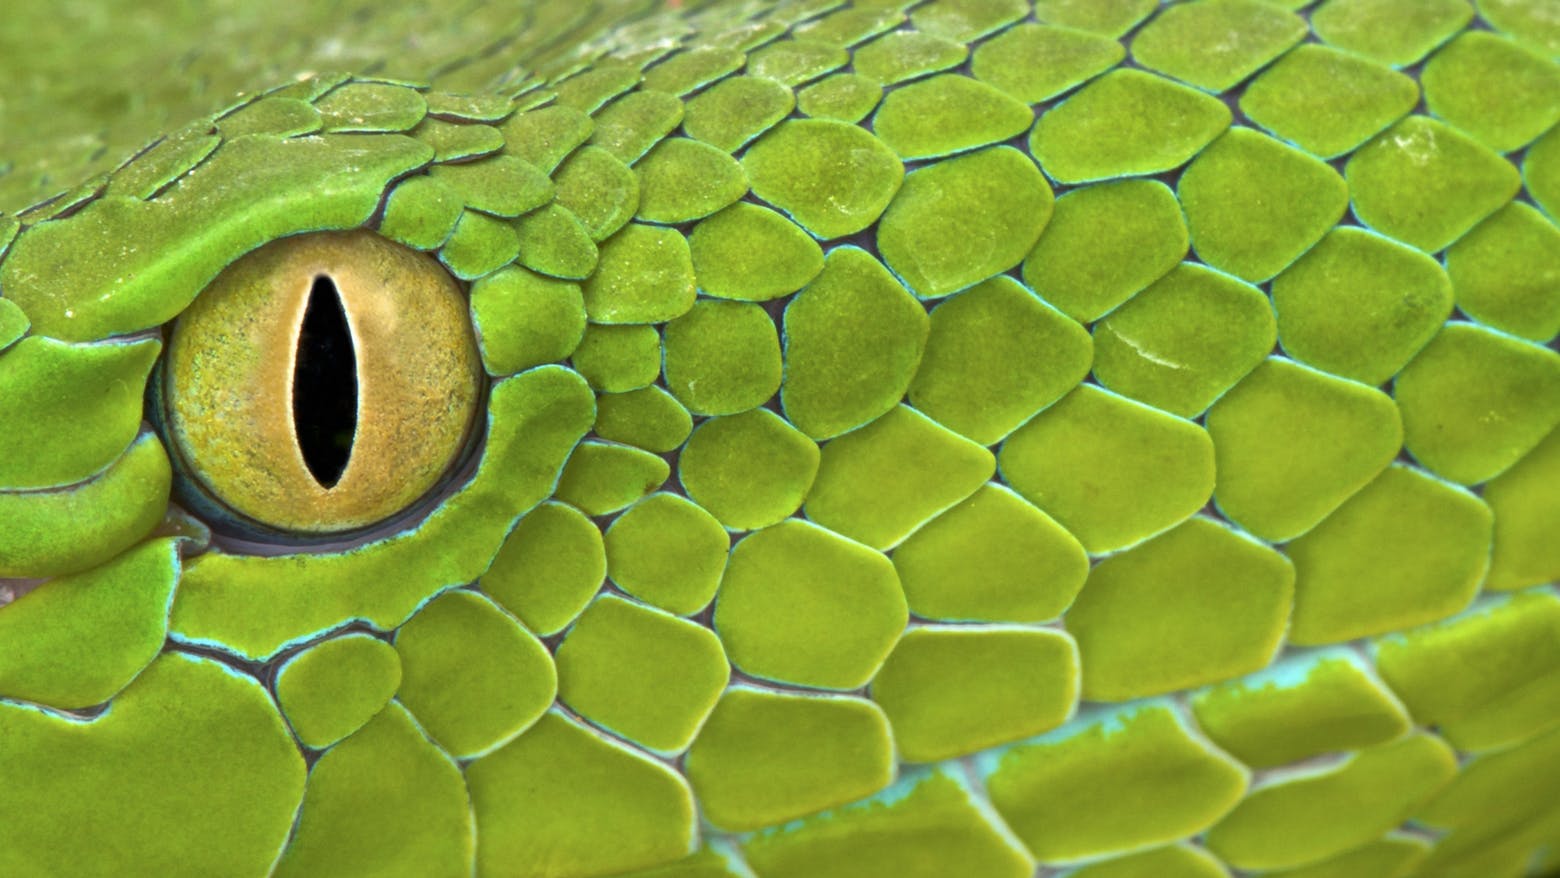 A snake's eye